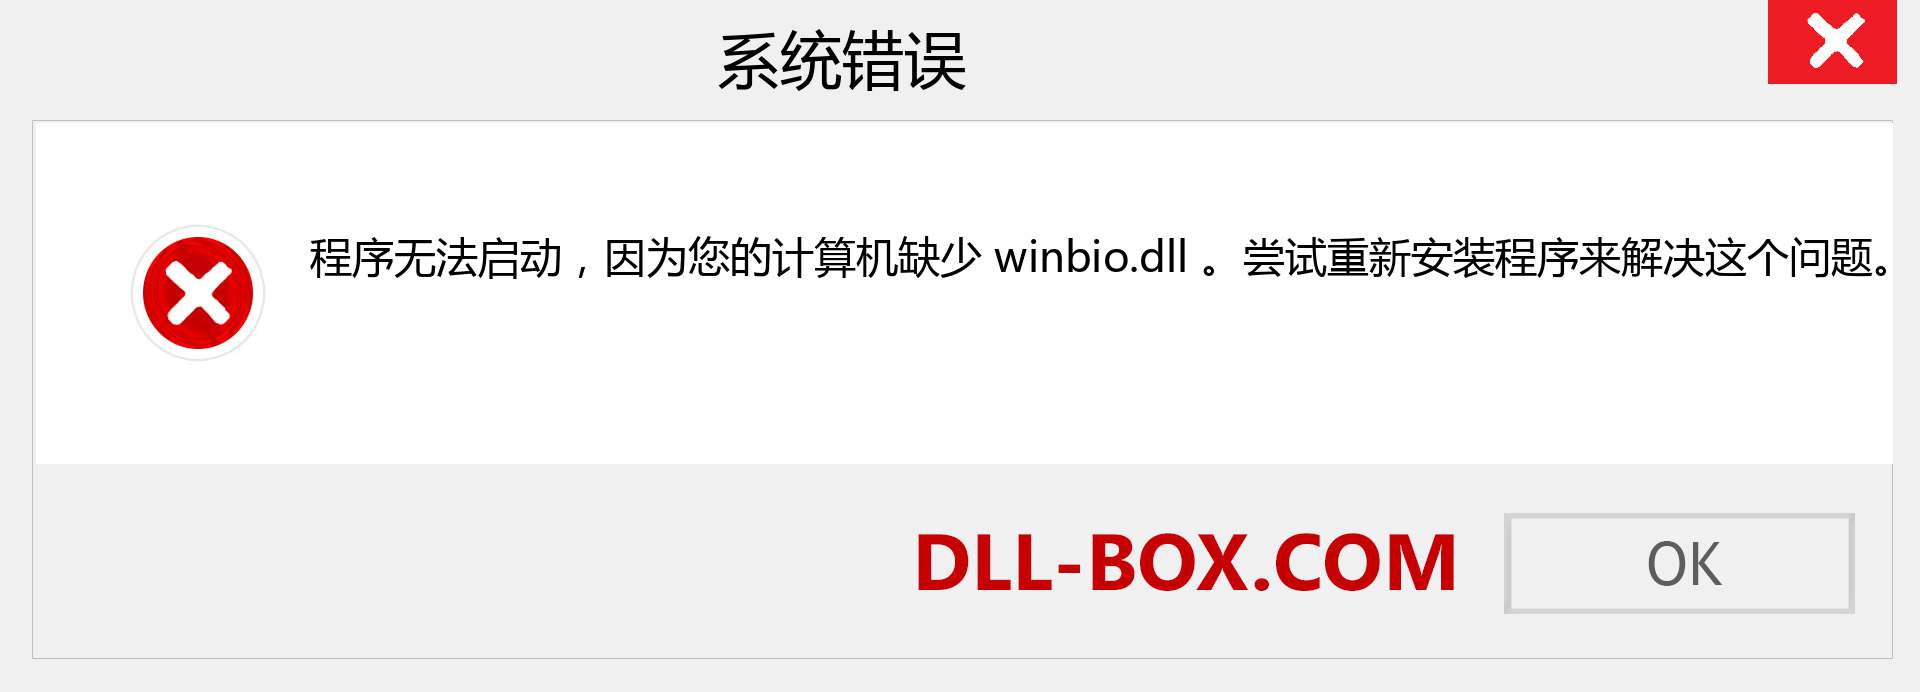 winbio.dll 文件丢失？。 适用于 Windows 7、8、10 的下载 - 修复 Windows、照片、图像上的 winbio dll 丢失错误